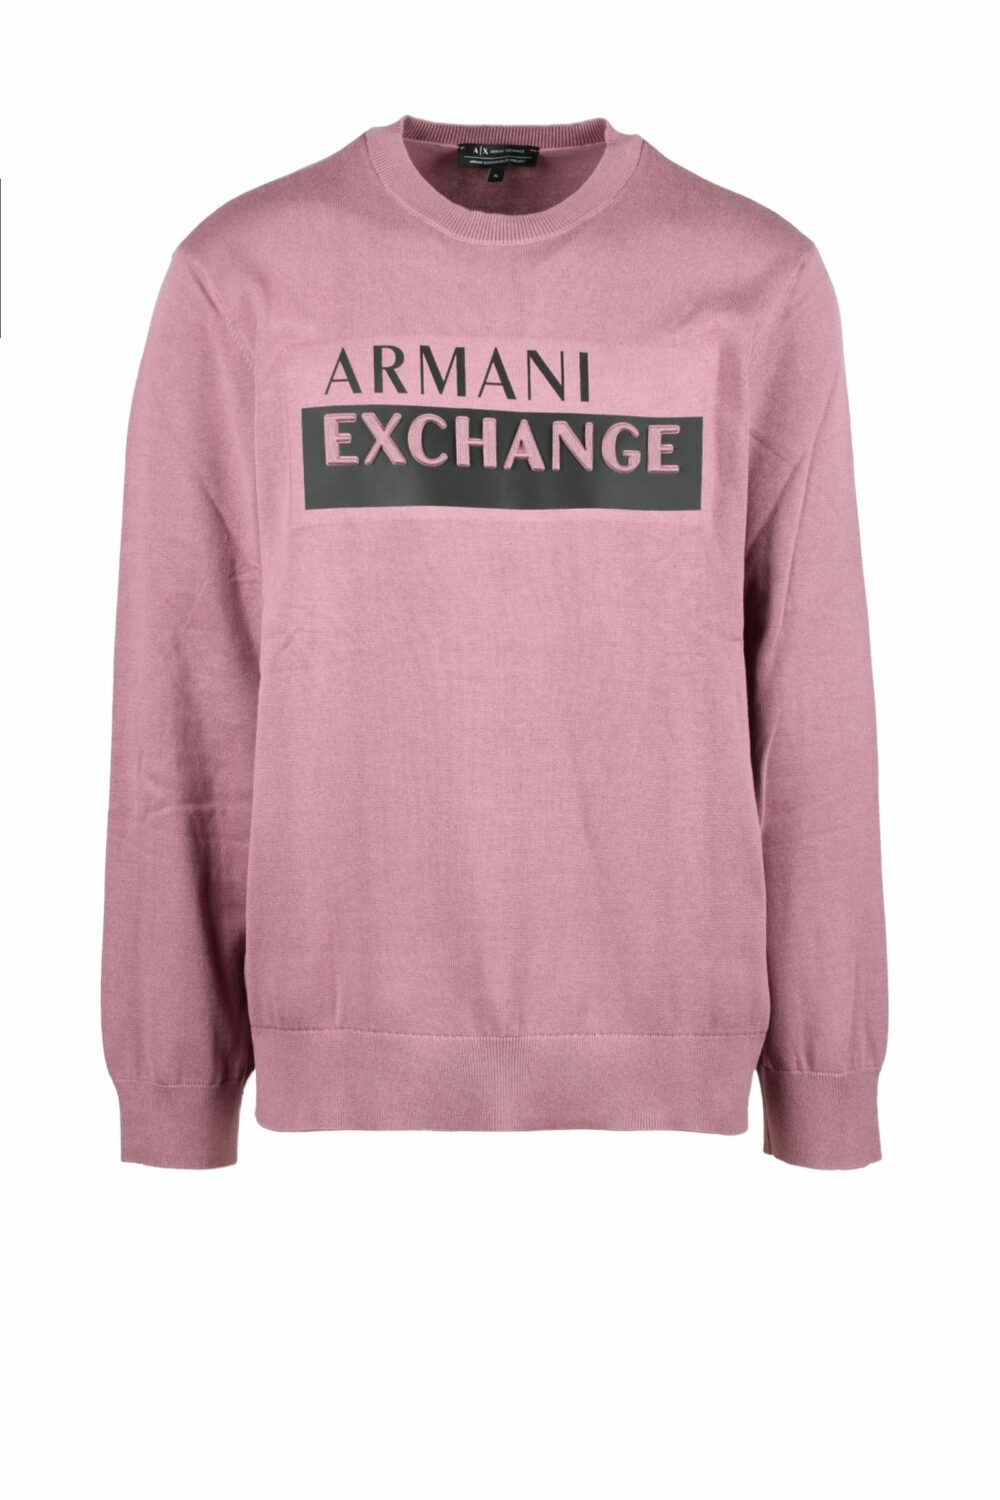 Maglia Armani Exchange Rosa - Foto 1